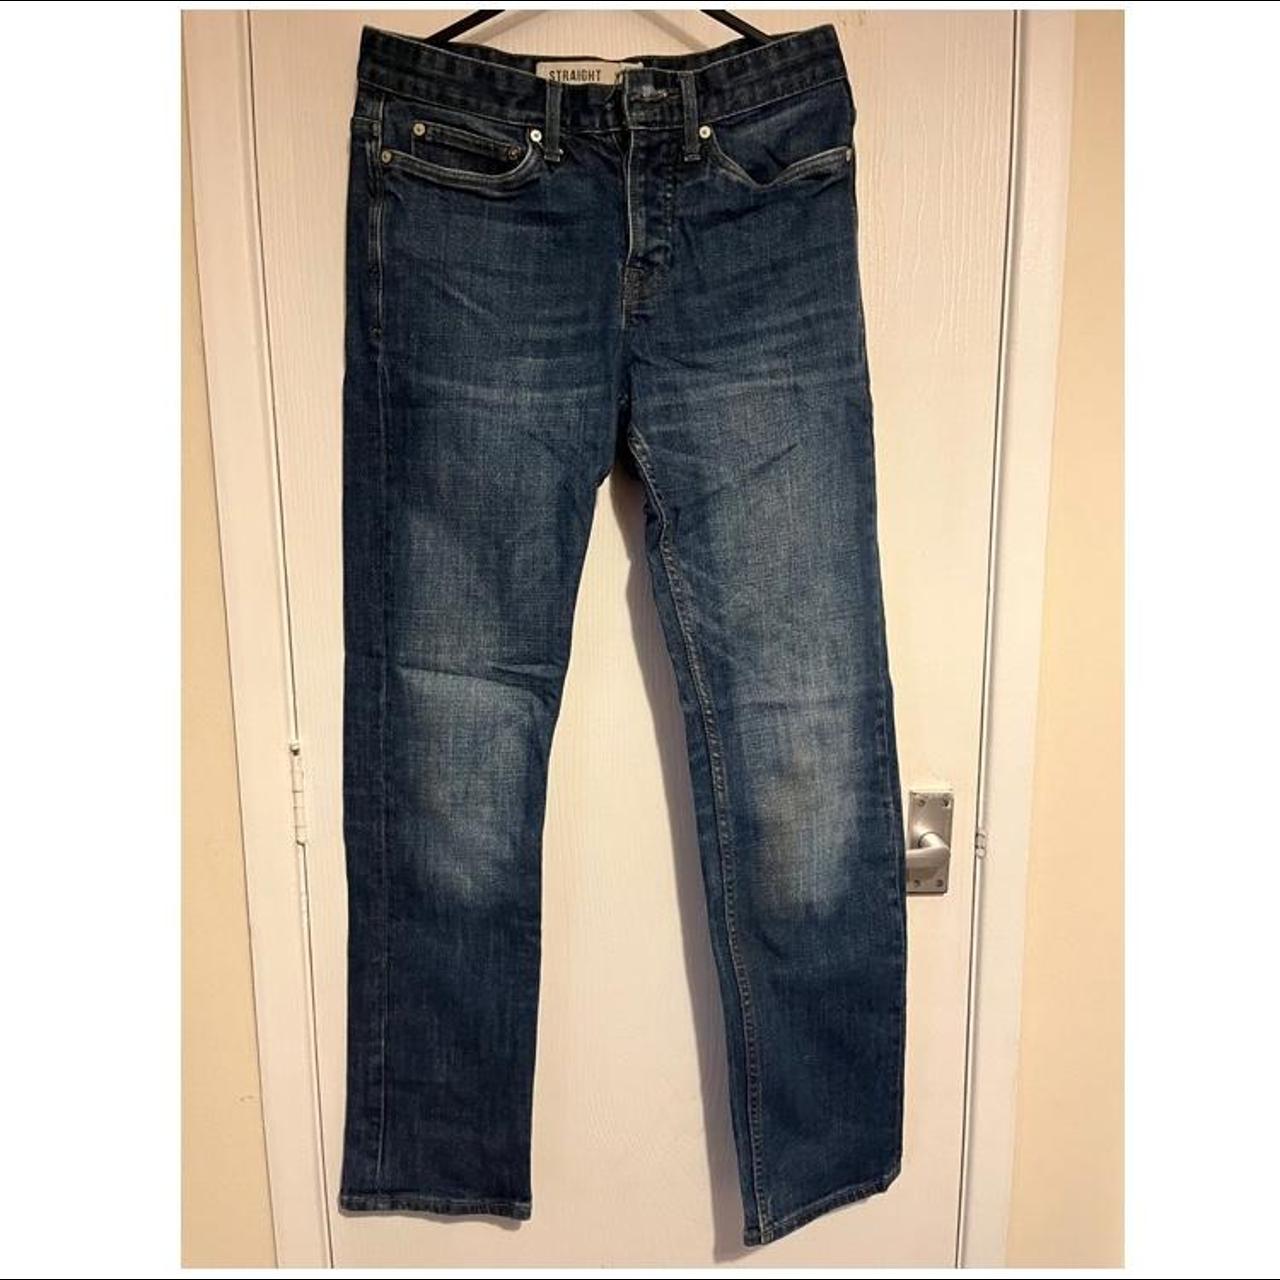 Denim Blue Jeans ️ 28 Inch In Waist - 32 In Leg... - Depop